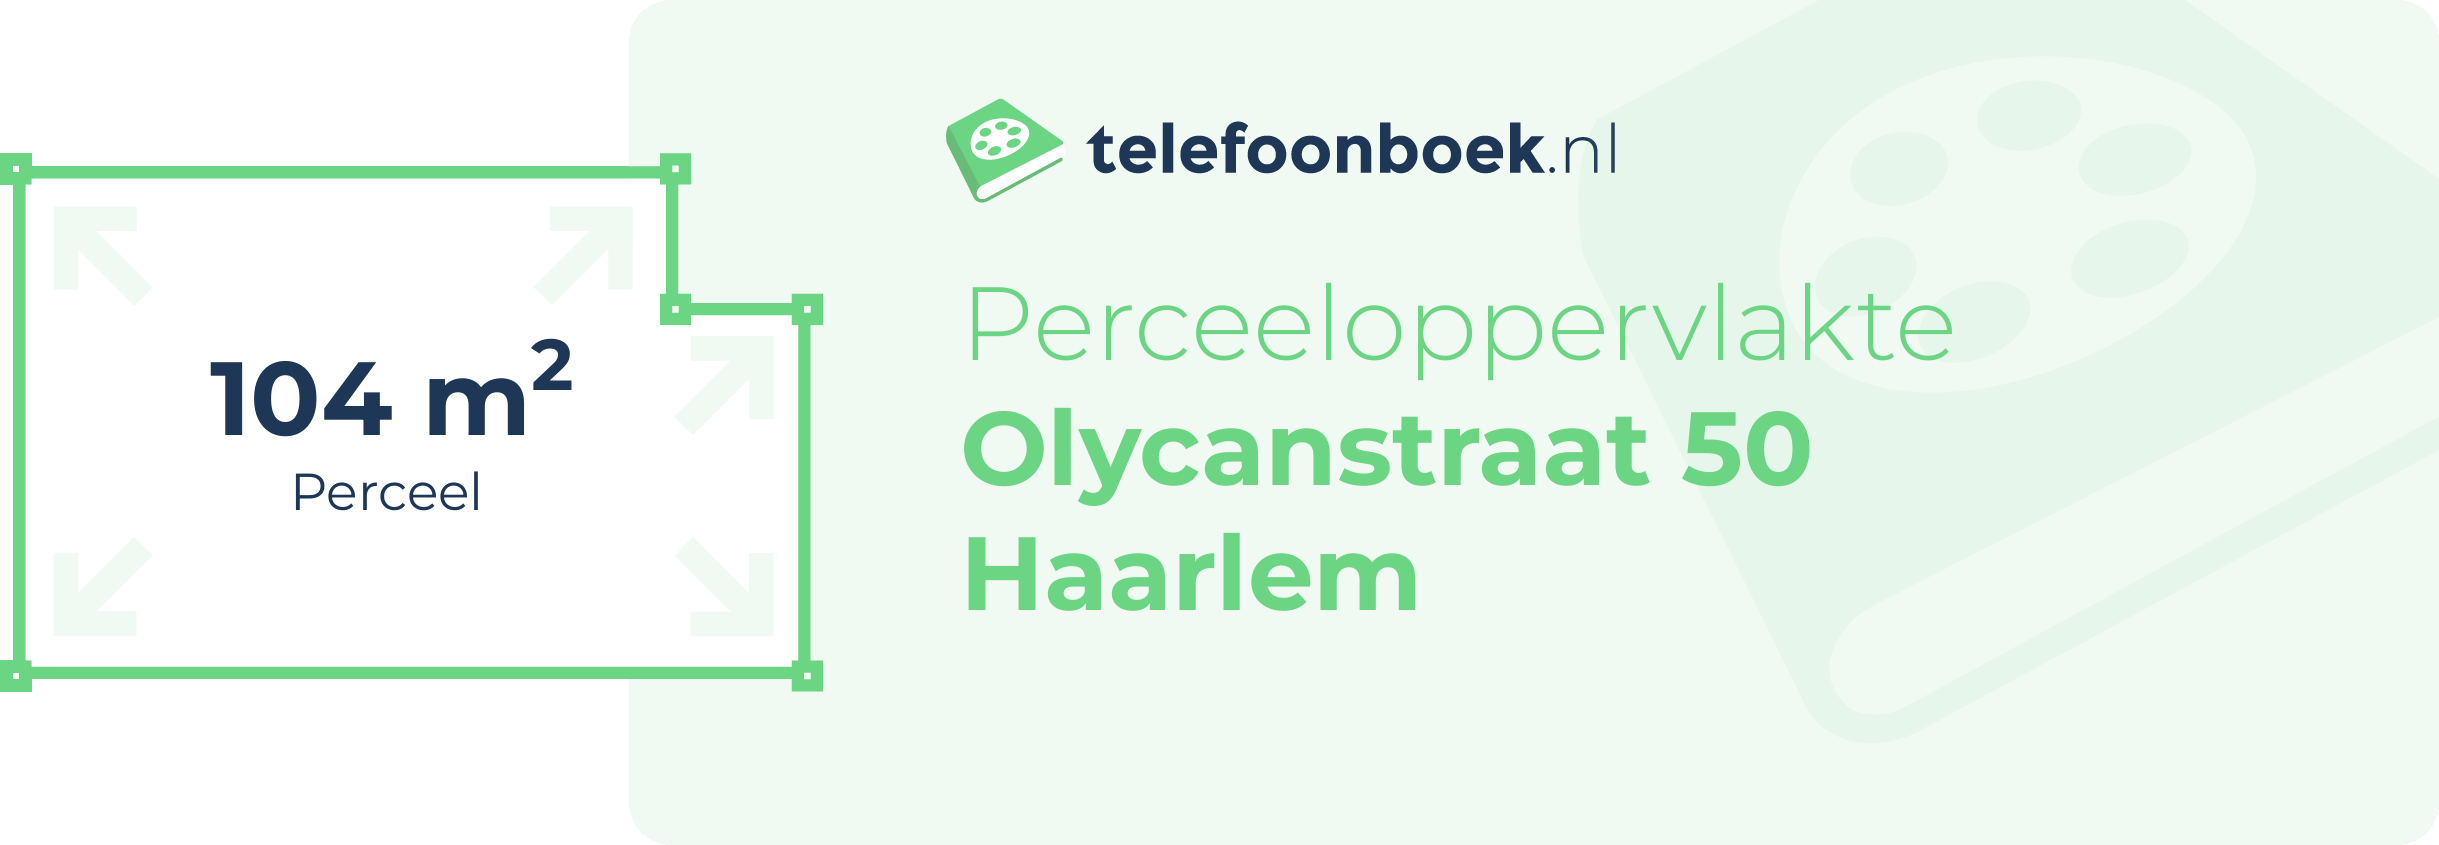 Perceeloppervlakte Olycanstraat 50 Haarlem